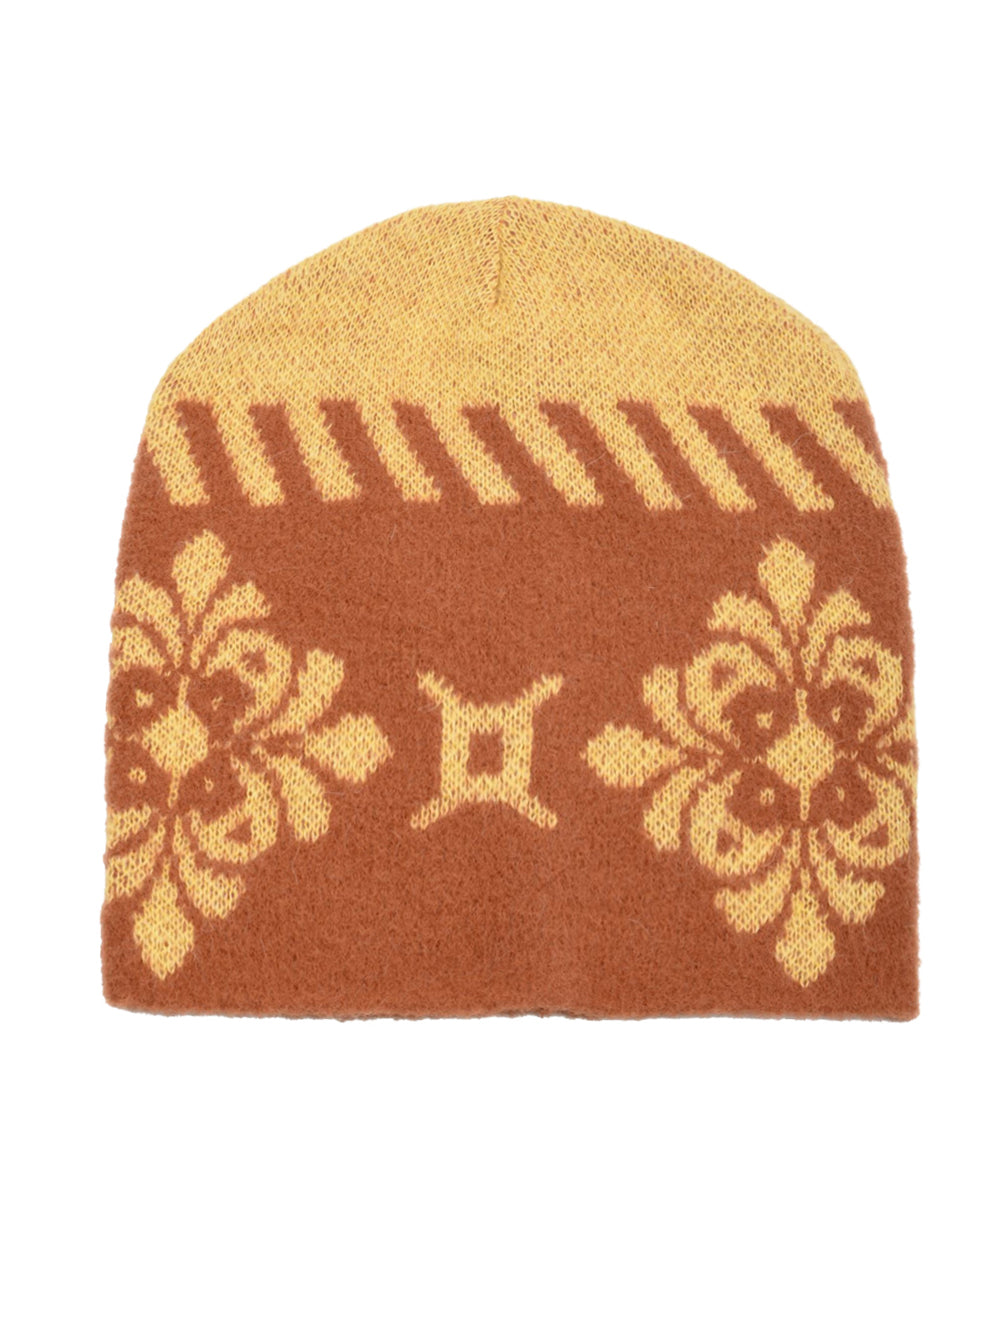 Immagine del cappello firmato Akep   in maglia da donna con fantasia beige e ruggine damasco 